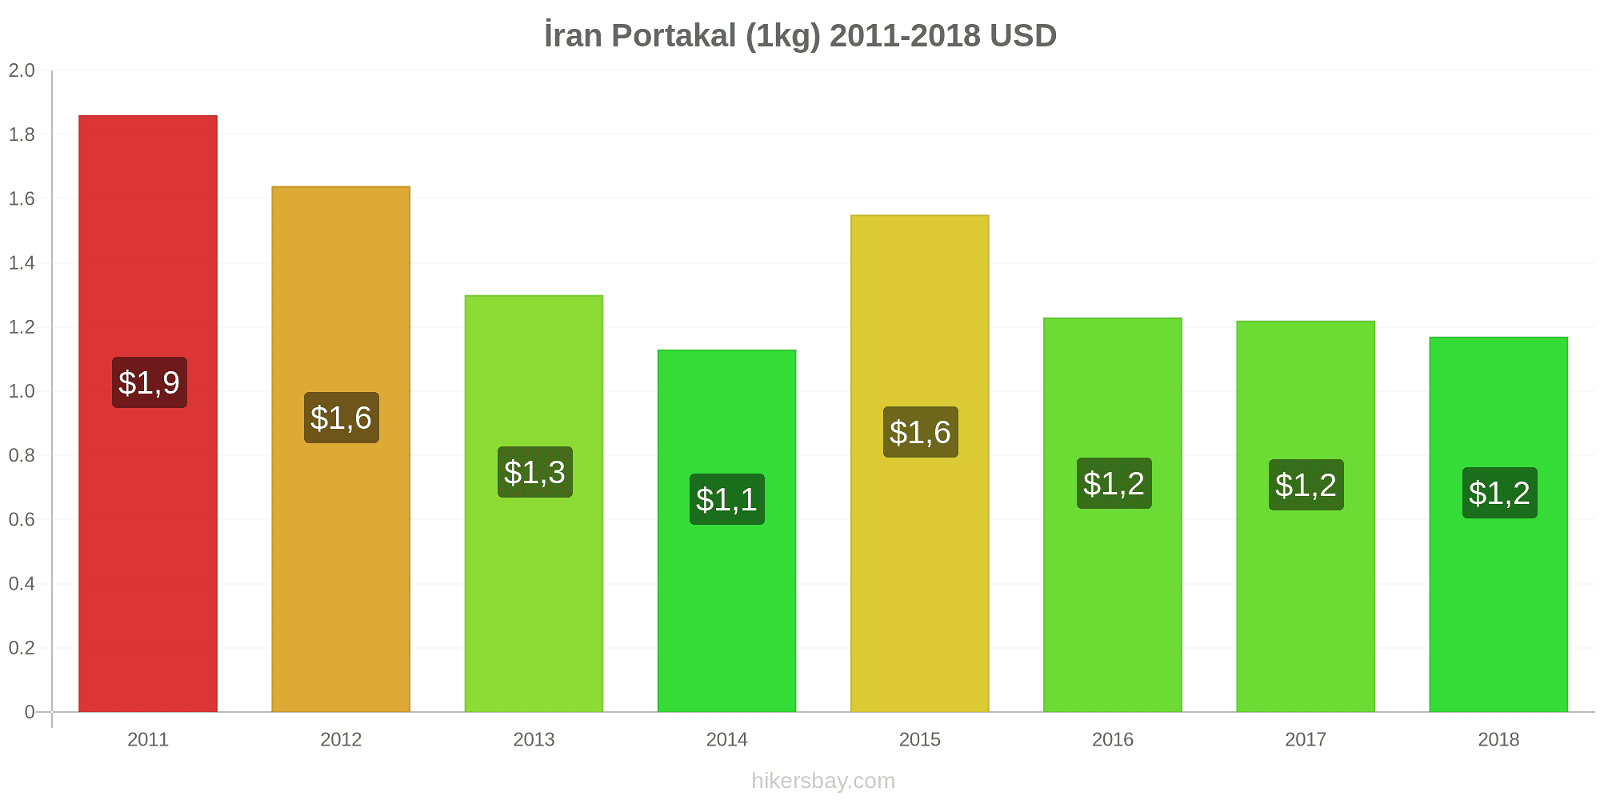 İran fiyat değişiklikleri Portakal (1kg) hikersbay.com